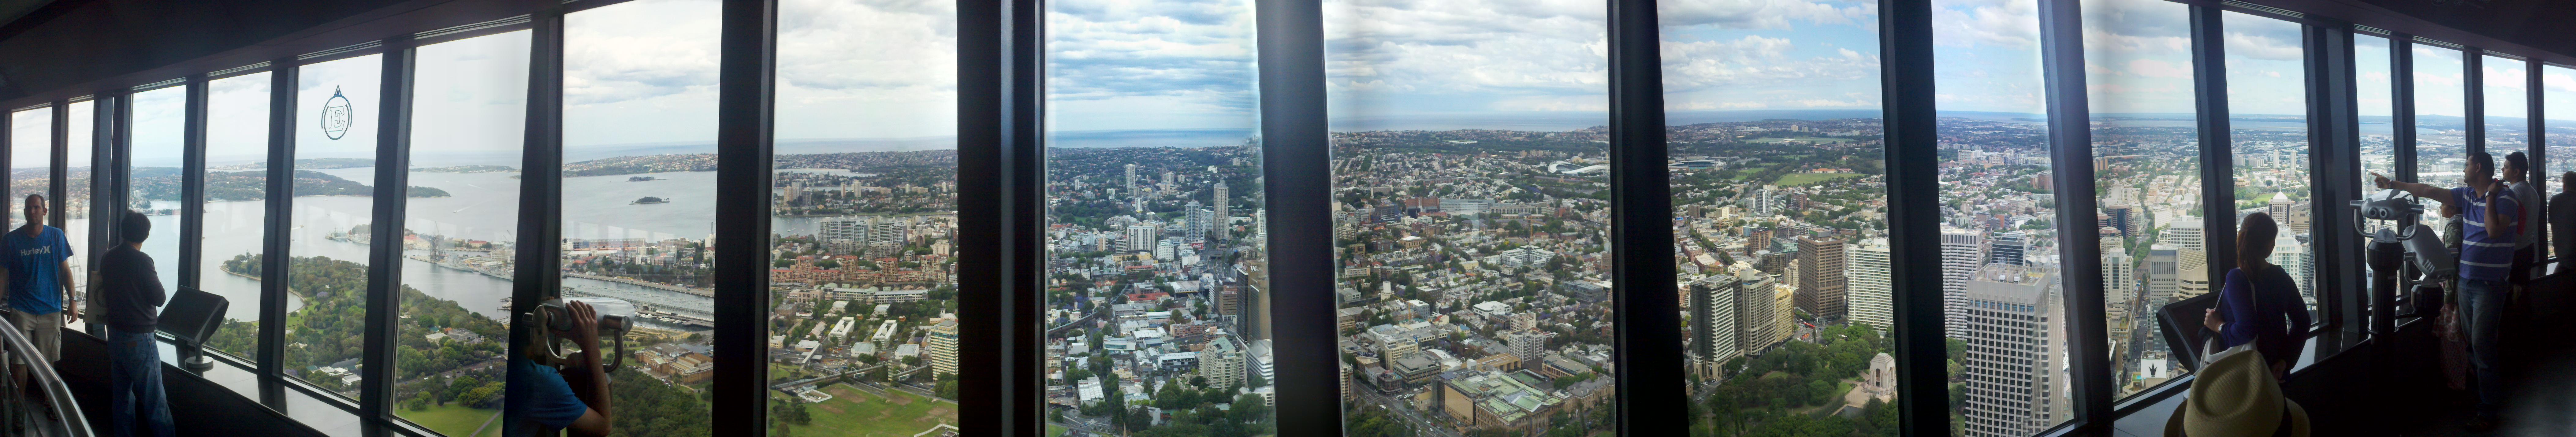 Sydney Tower Observation Deck